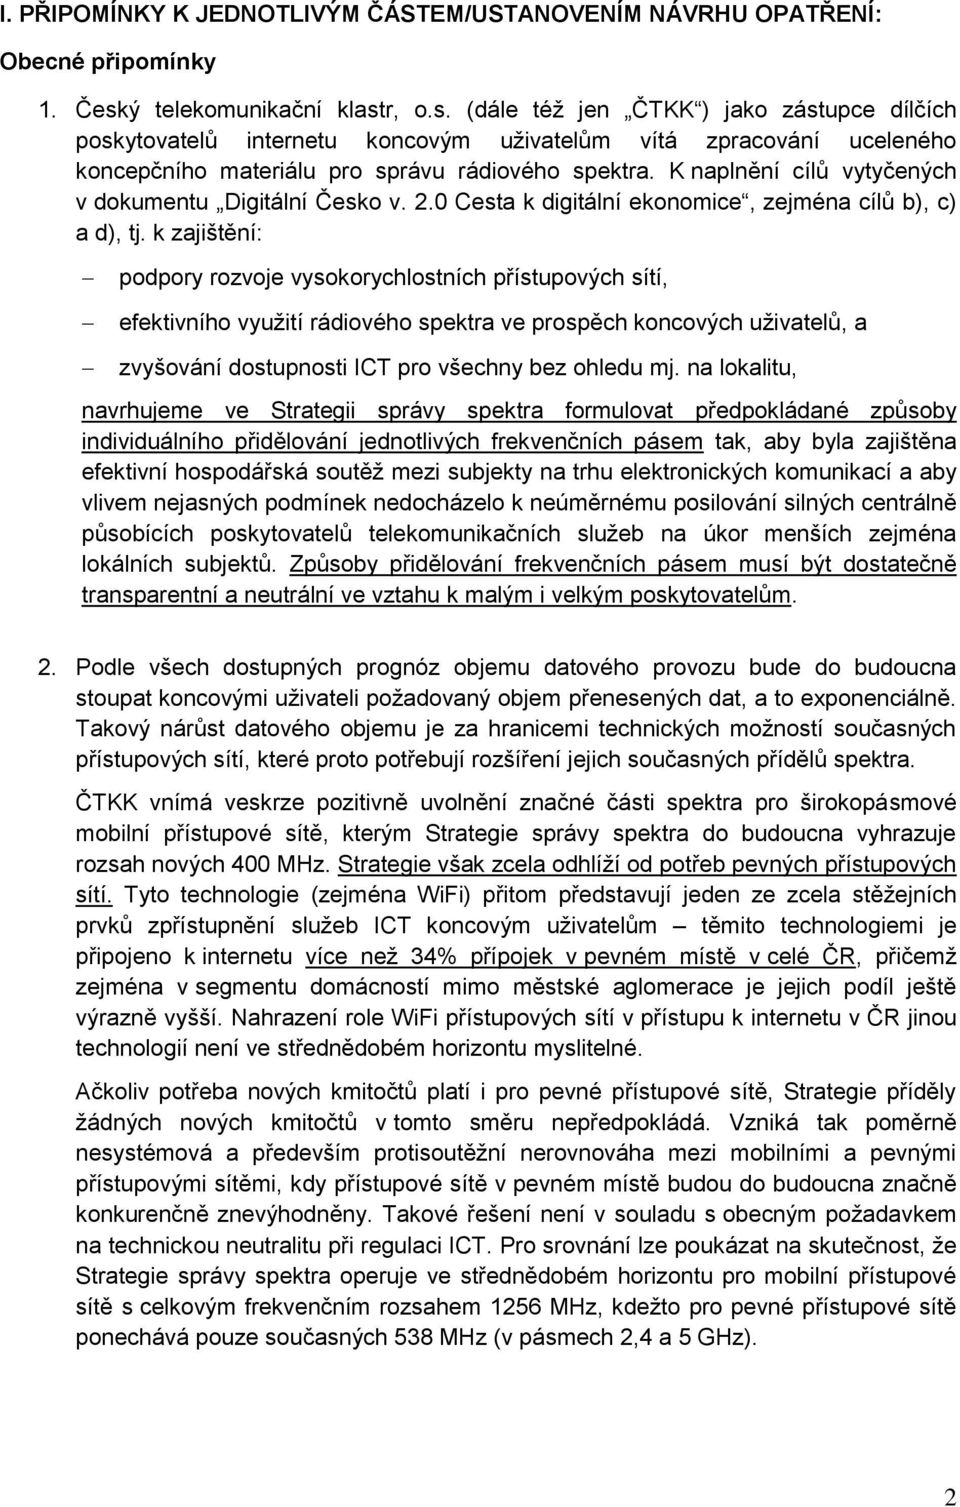 K naplnění cílů vytyčených v dokumentu Digitální Česko v. 2.0 Cesta k digitální ekonomice, zejména cílů b), c) a d), tj.